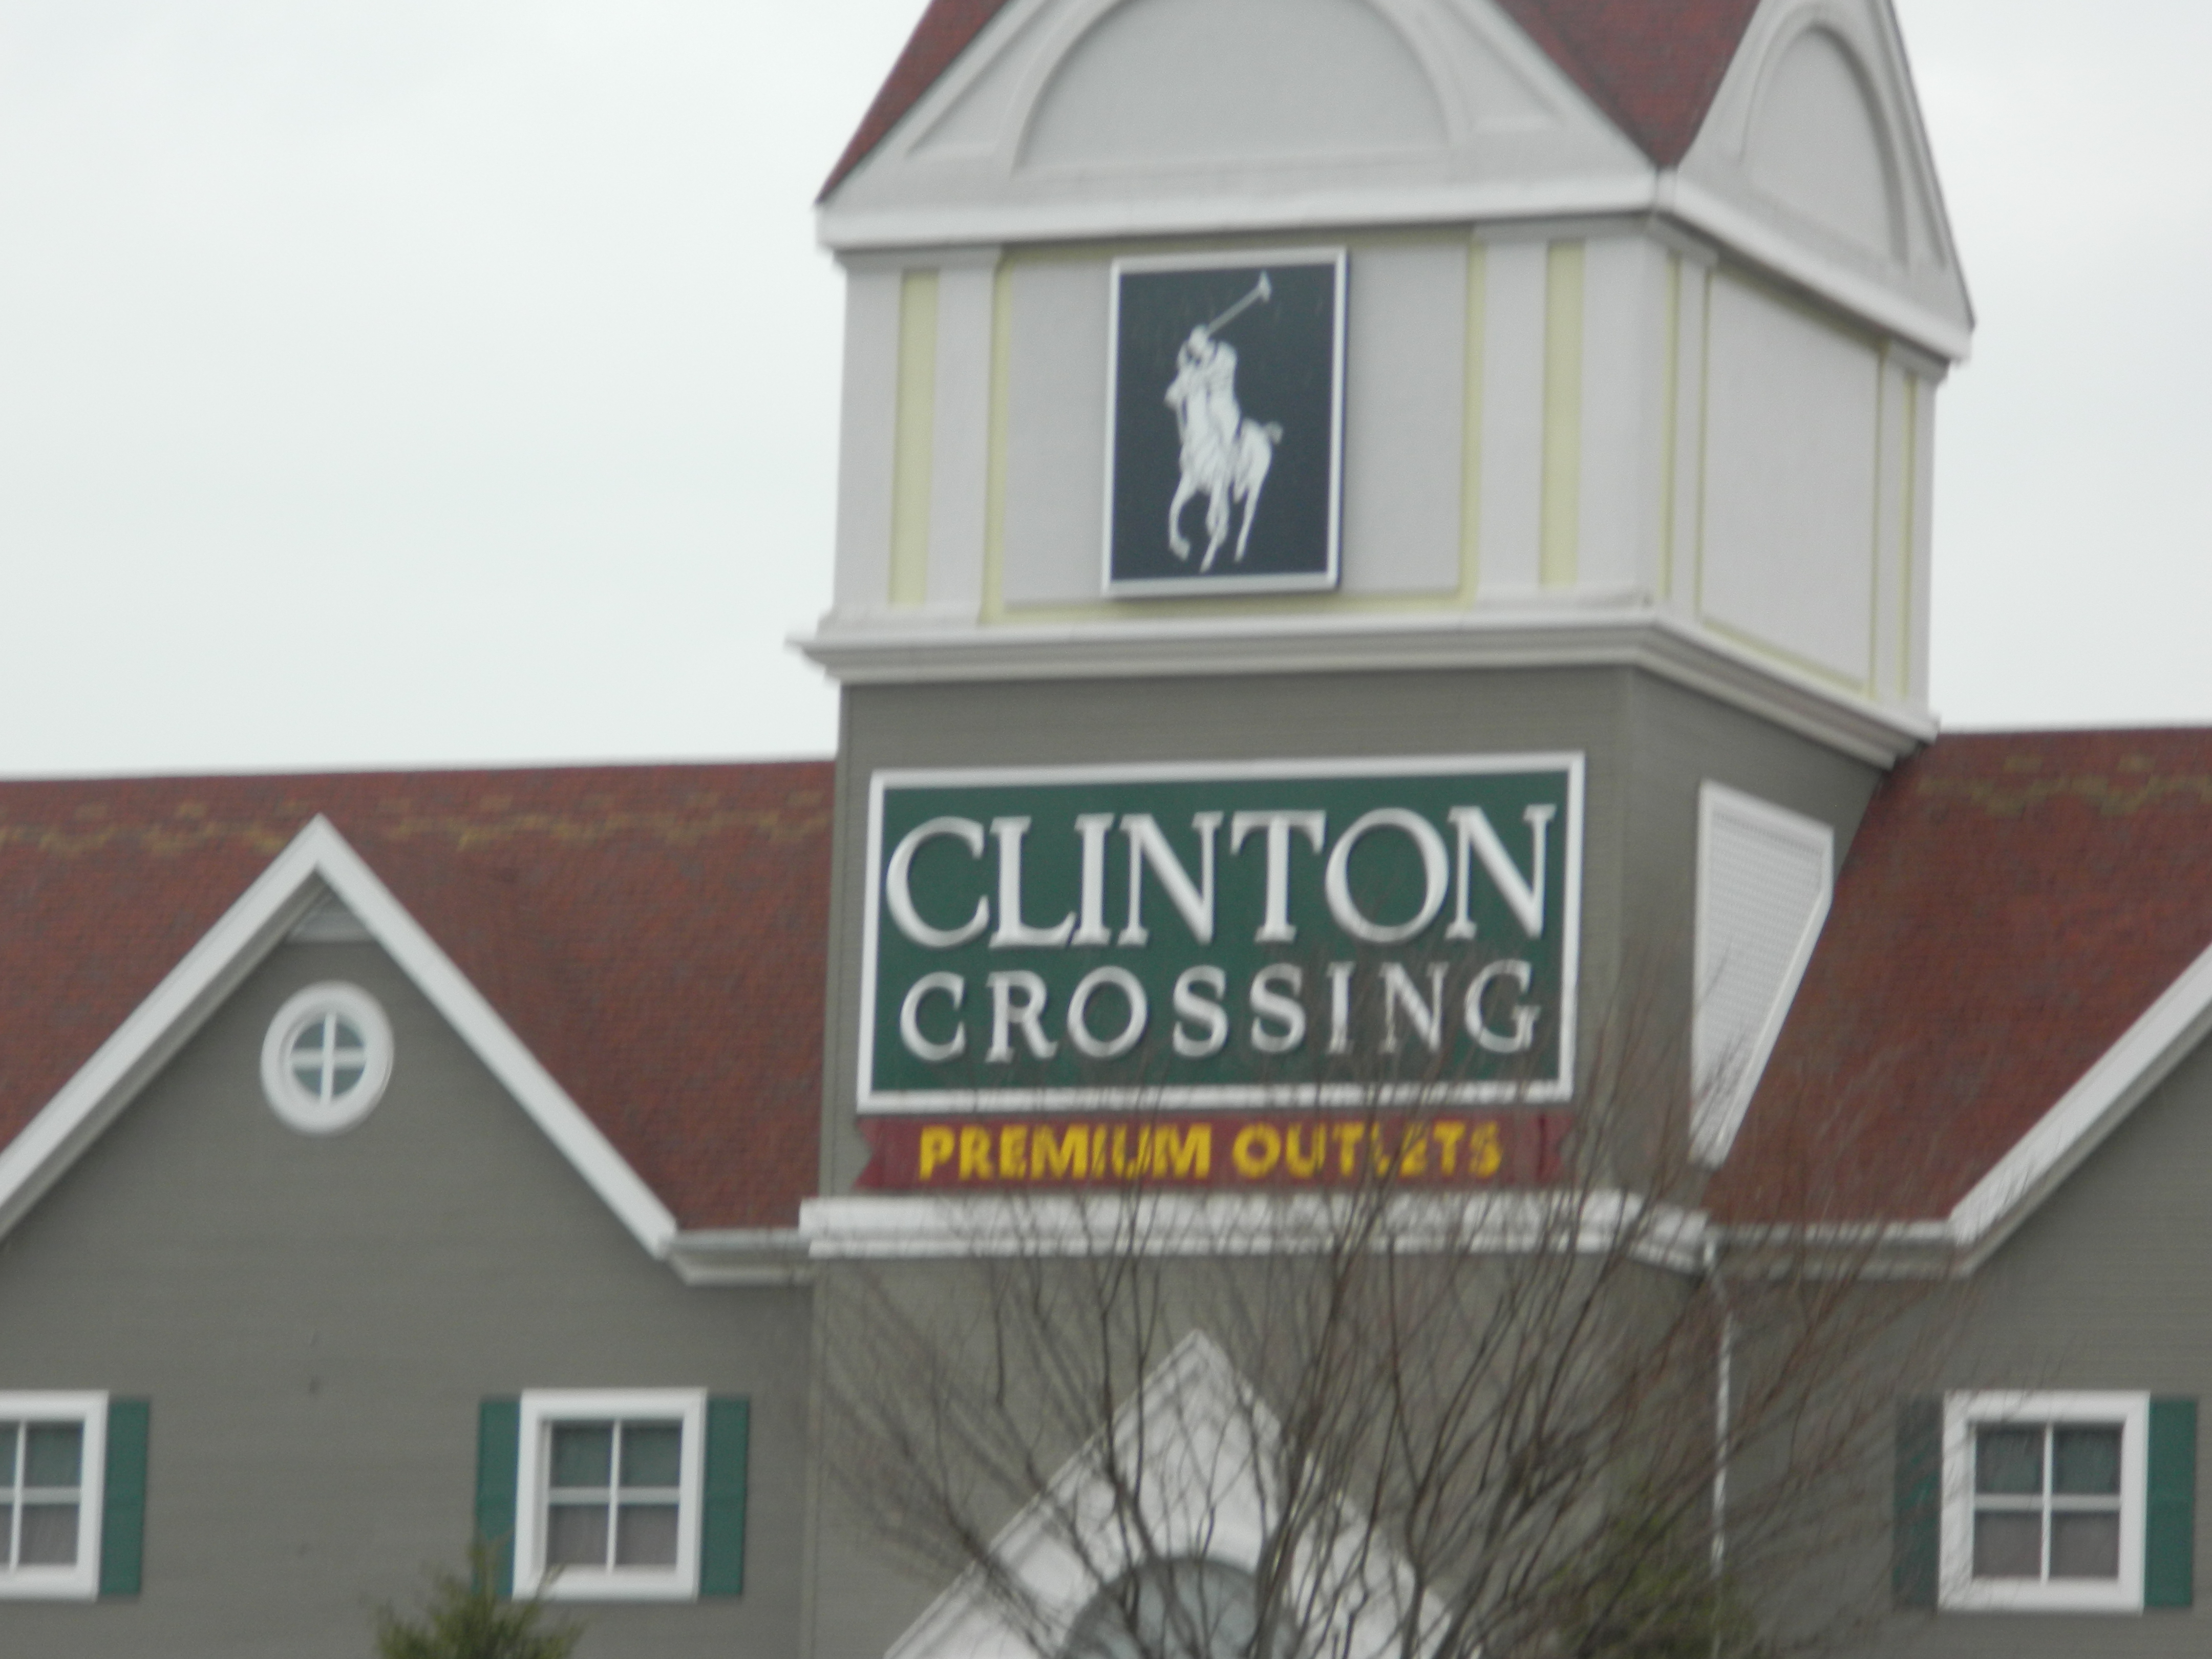 Clinton Crossing Premium Outlets - Clinton, Connecticut